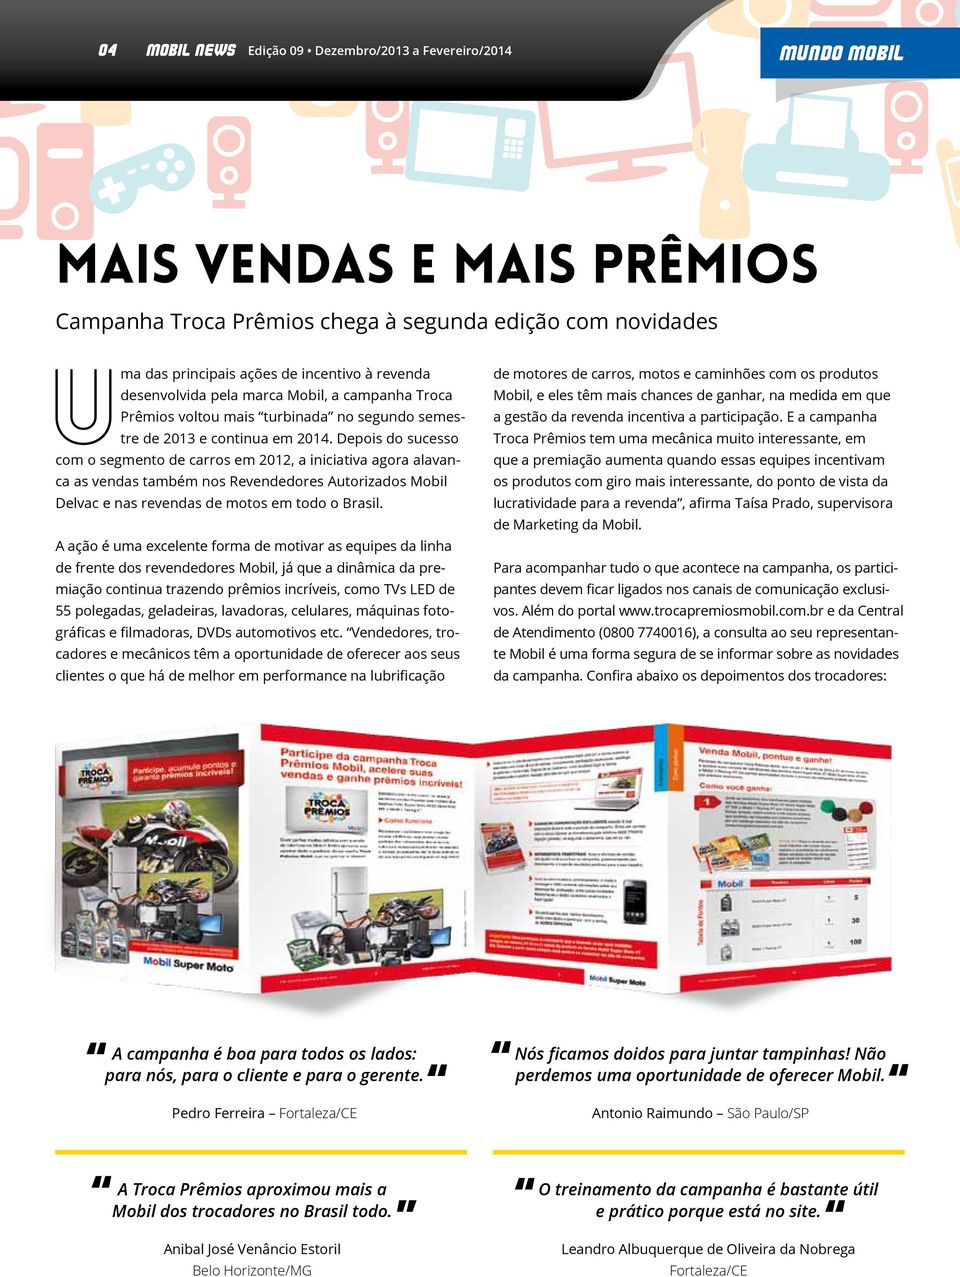 Depois do sucesso com o segmento de carros em 2012, a iniciativa agora alavanca as vendas também nos Revendedores Autorizados Mobil Delvac e nas revendas de motos em todo o Brasil.